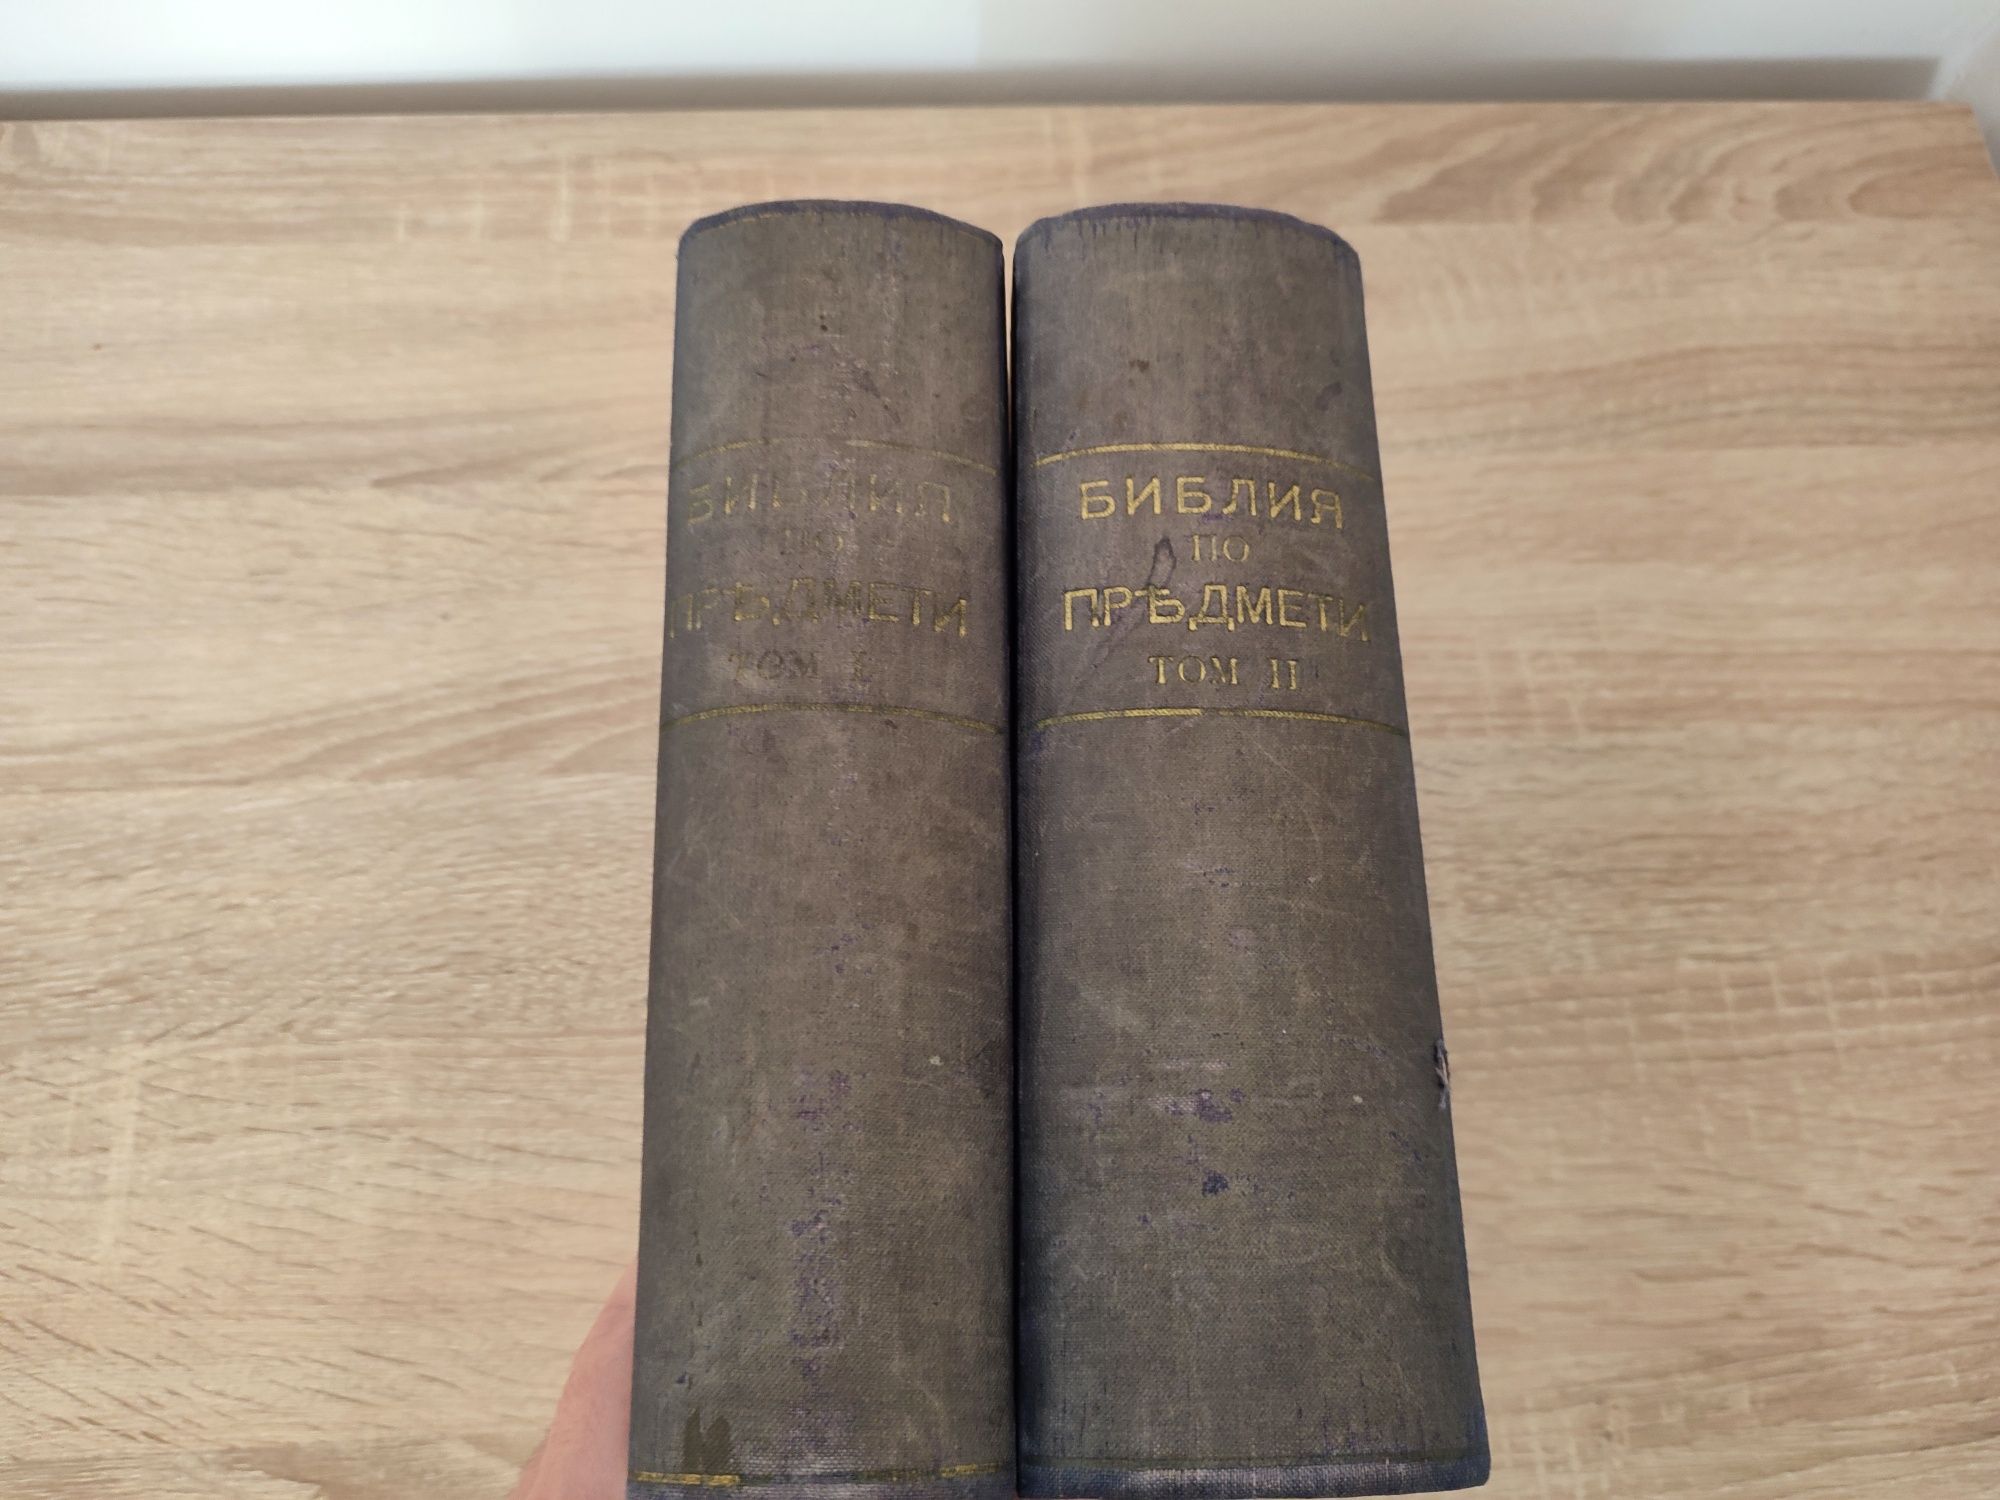 1928 Изложение на Библията по предмети том 1 и 2